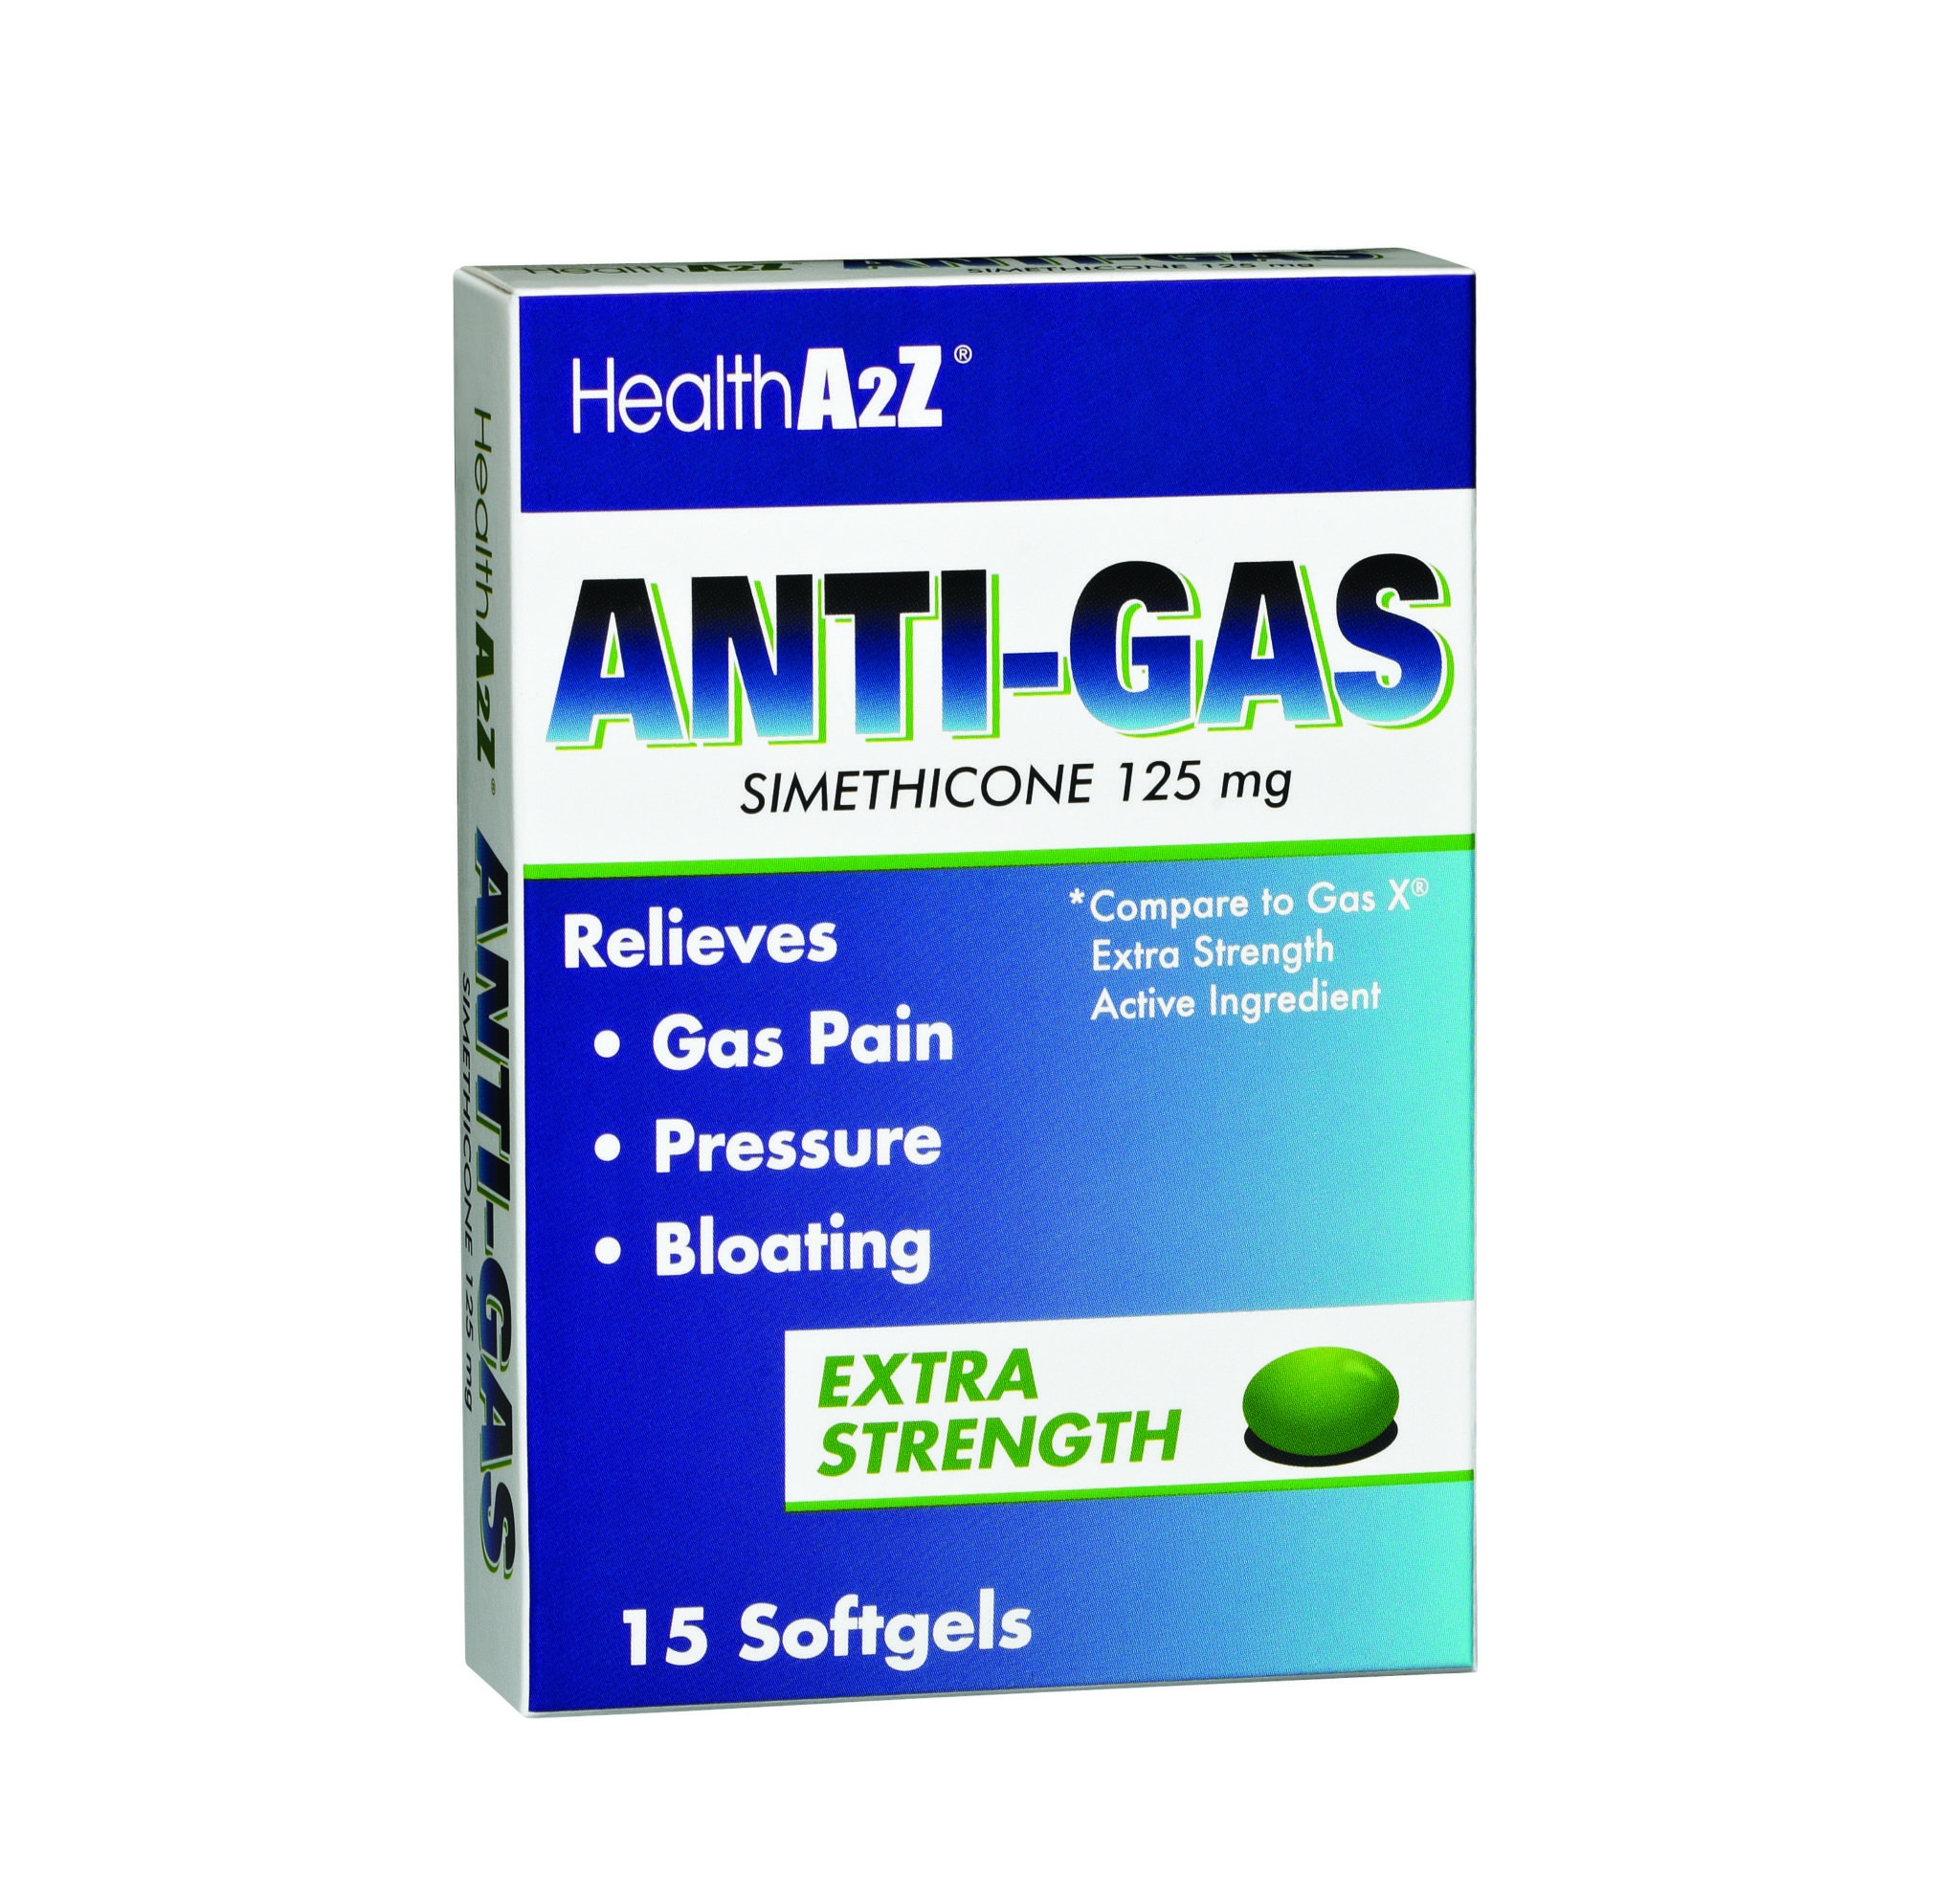 Health A2Z Anti-Gas Medication 